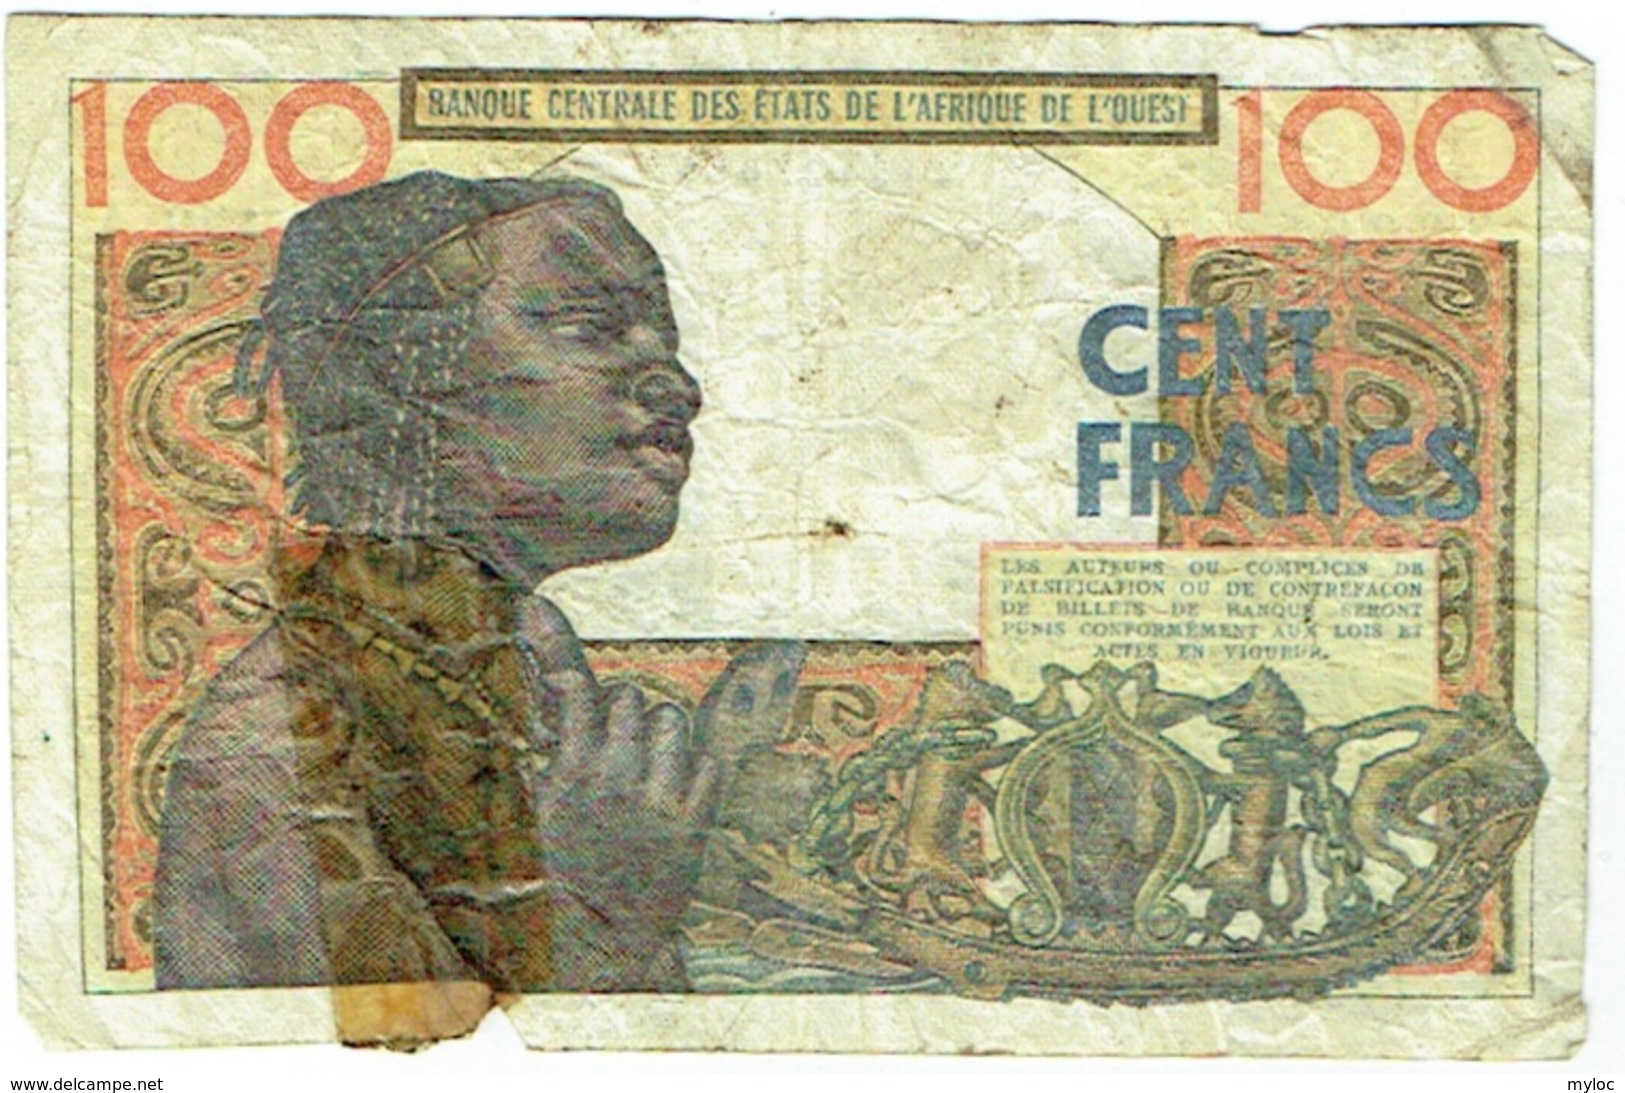 Banque Centrale Etats Afrique De L'Ouest. 100 (Cent) Francs. 20-3-1961 - West African States